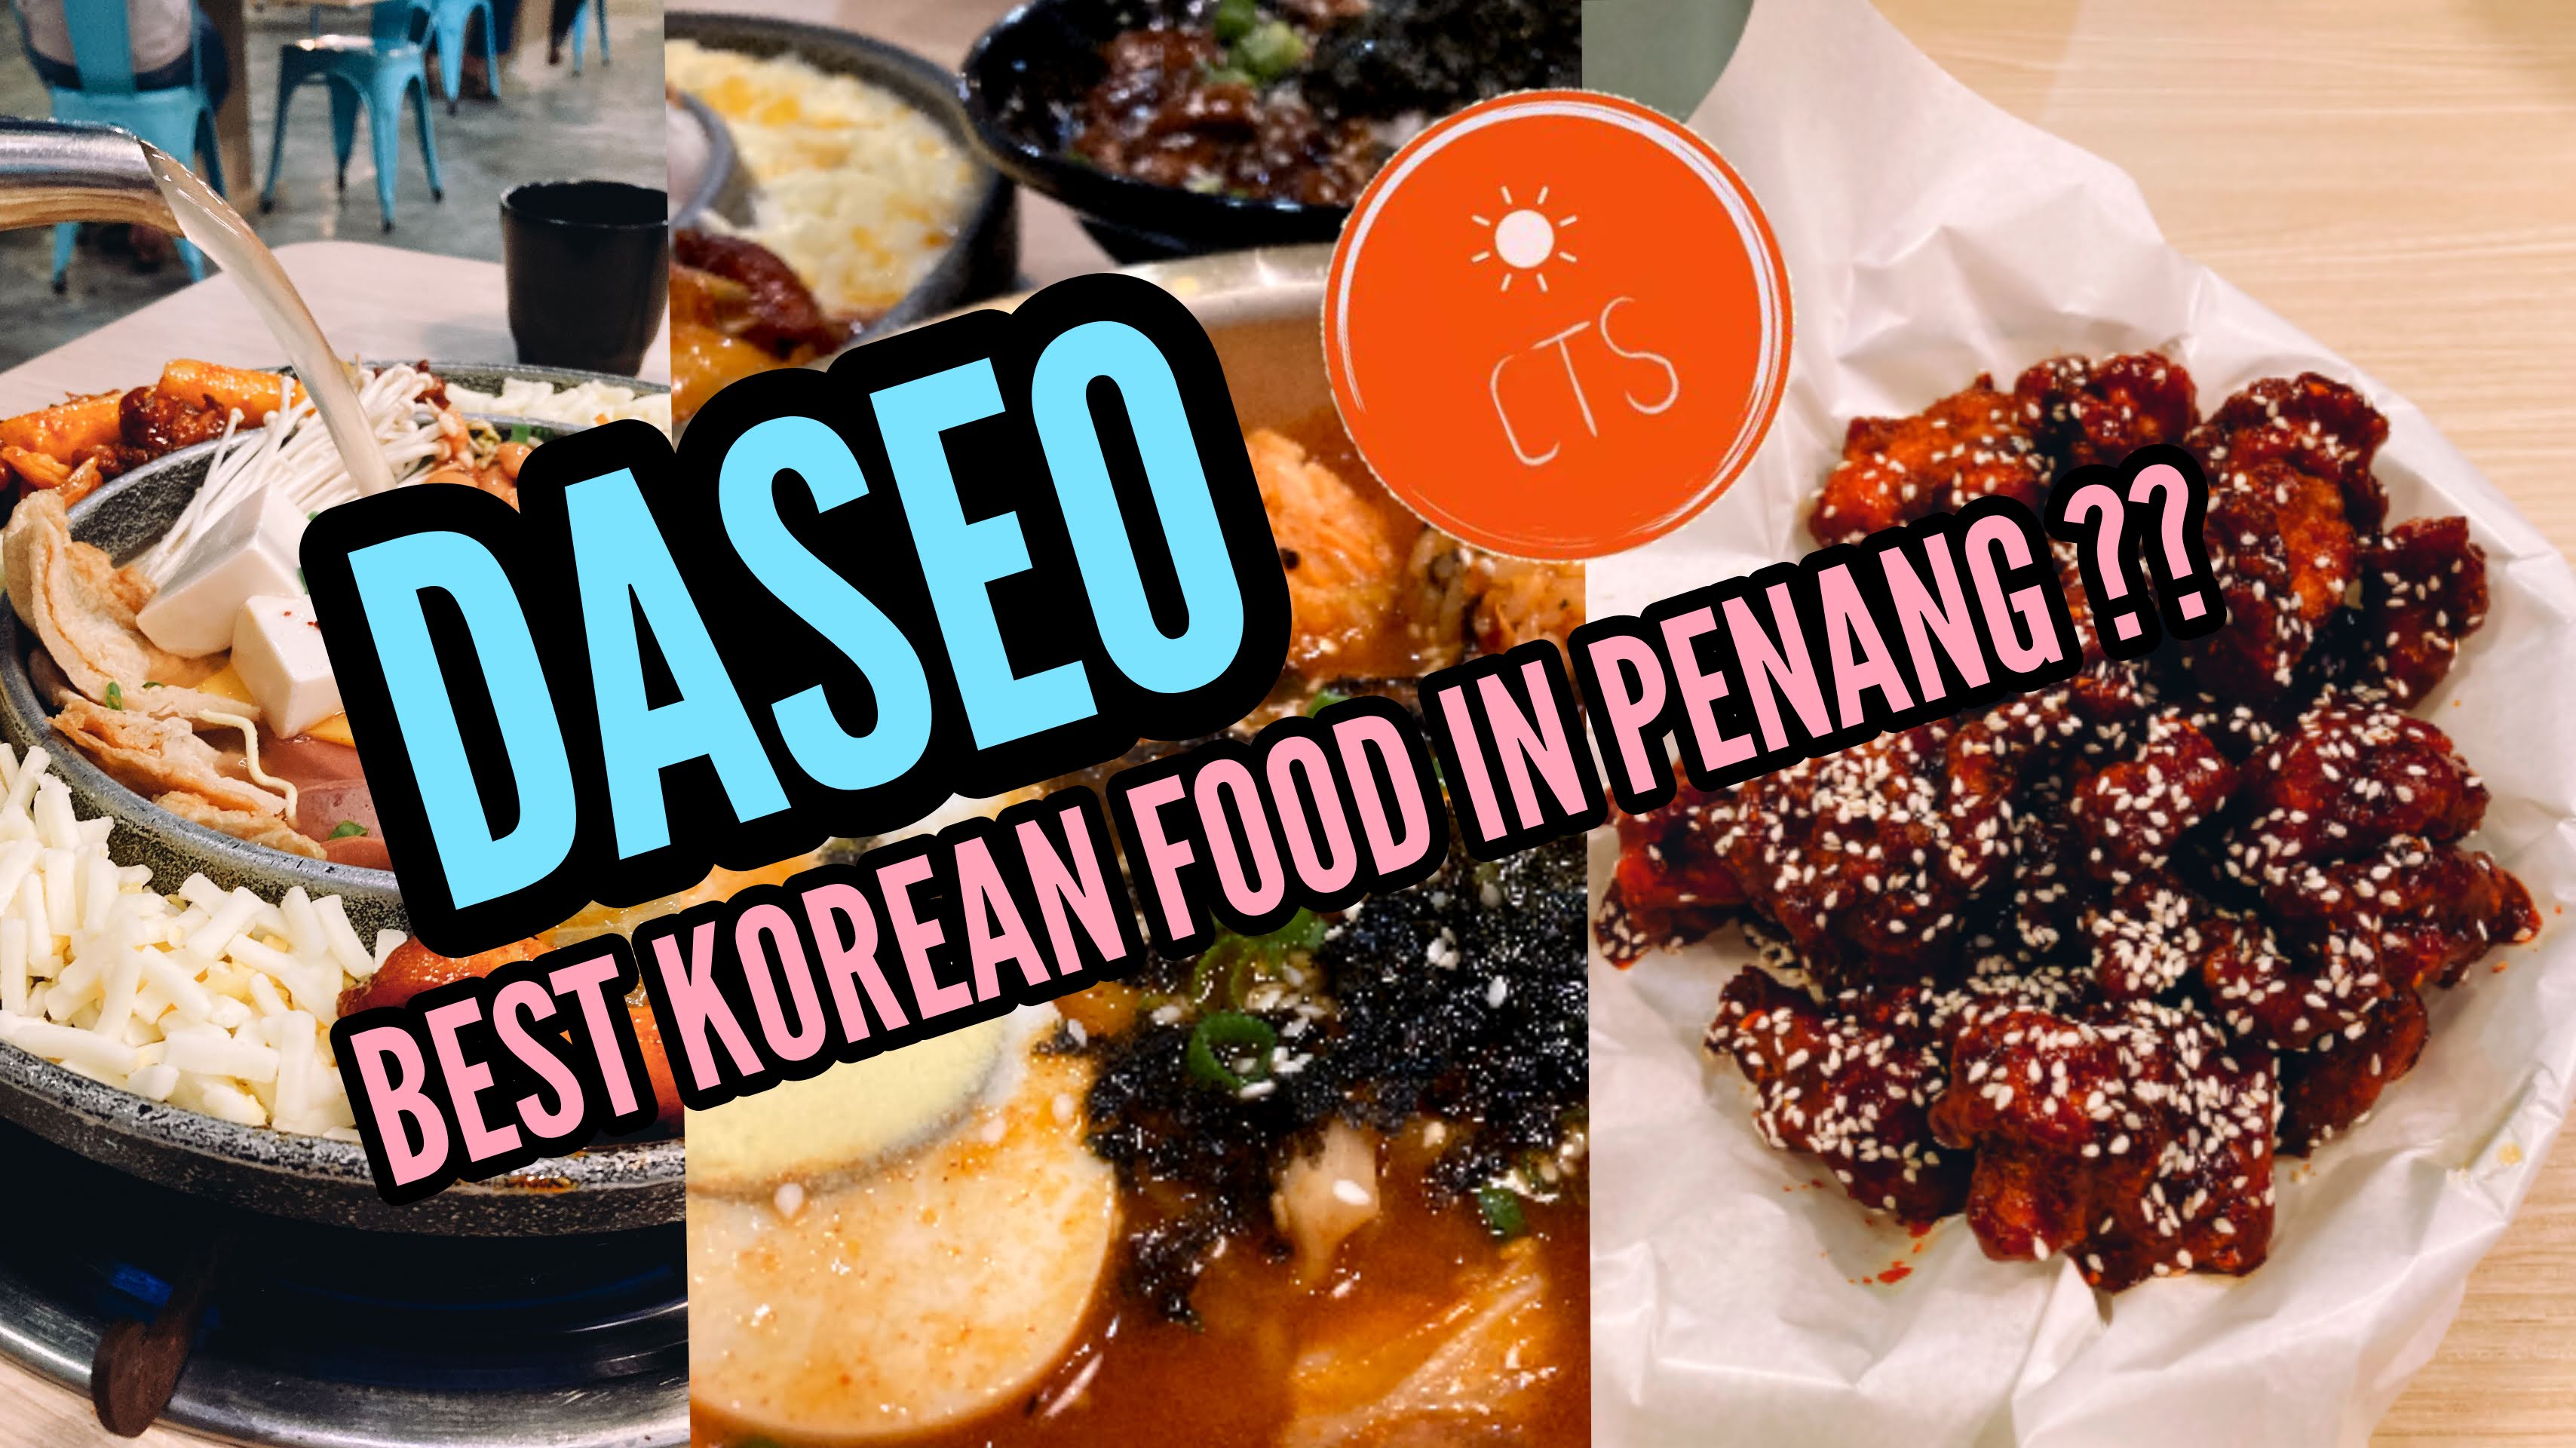 Tempat Makan Best Di Penang | Korean Food Restaurant Daseo Antara Yang Terbaik di Penang!